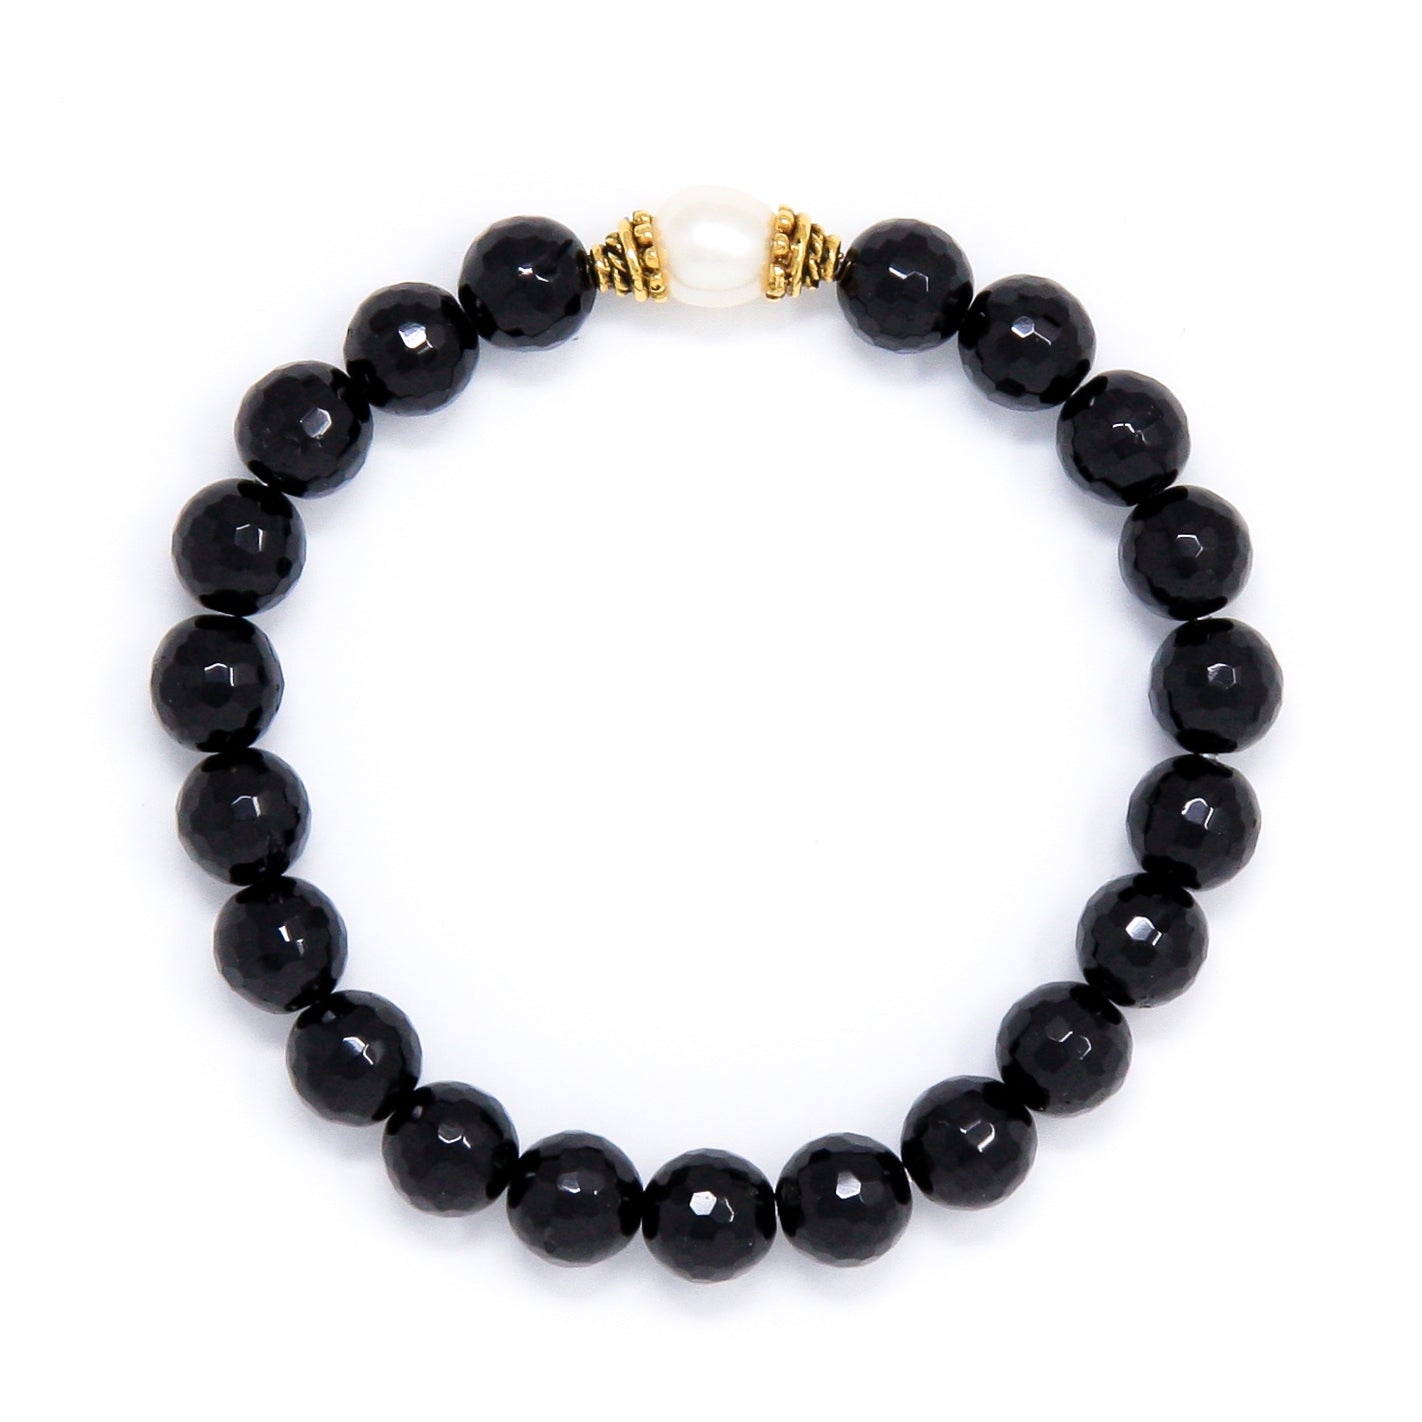 Black Tourmaline Mala Bracelet with Pearl, spiritual jewelry